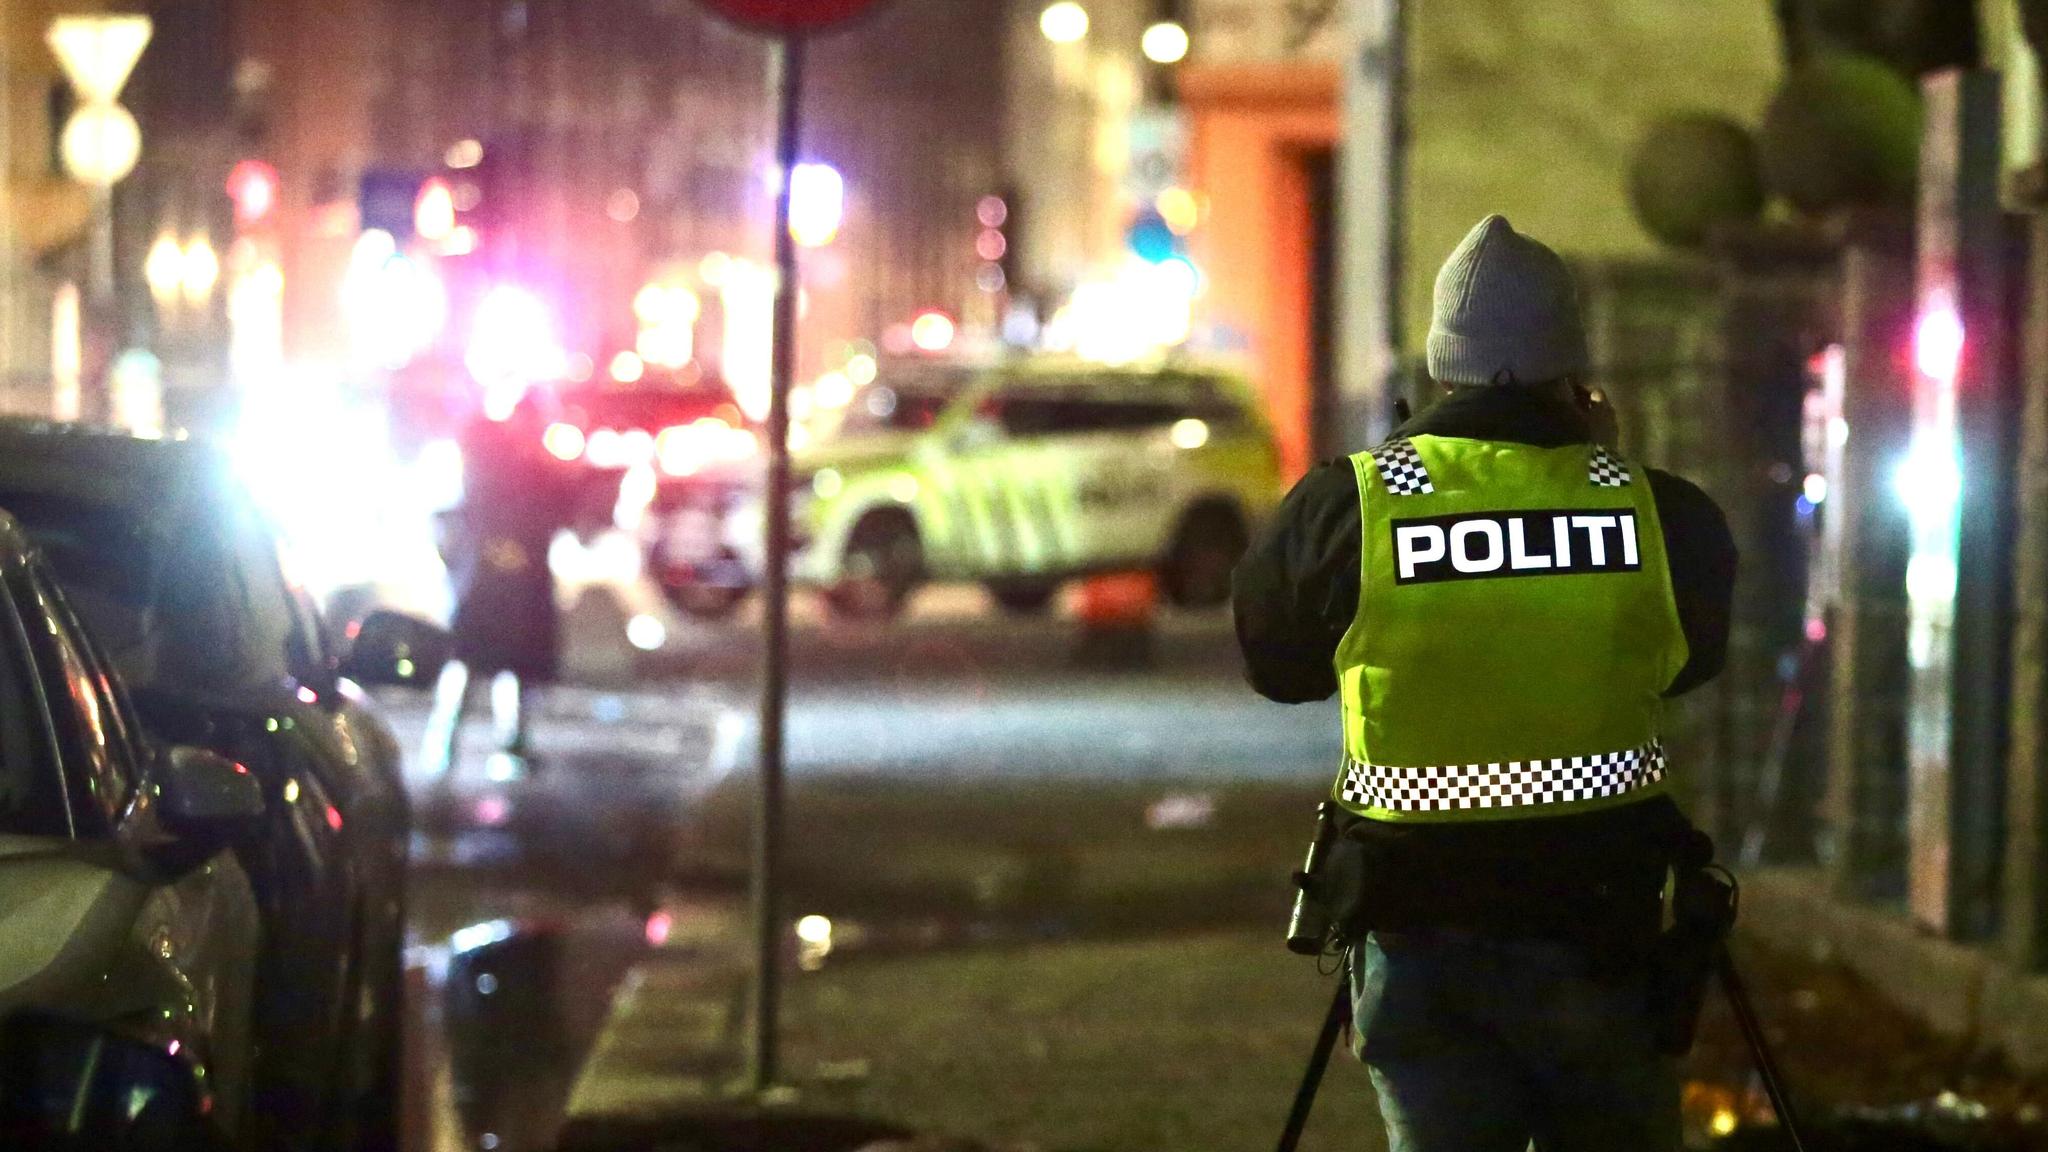 Mann skutt i beinet i Oslo: – Jeg sto ved fruktkassene og ryddet da jeg hørte skudd.